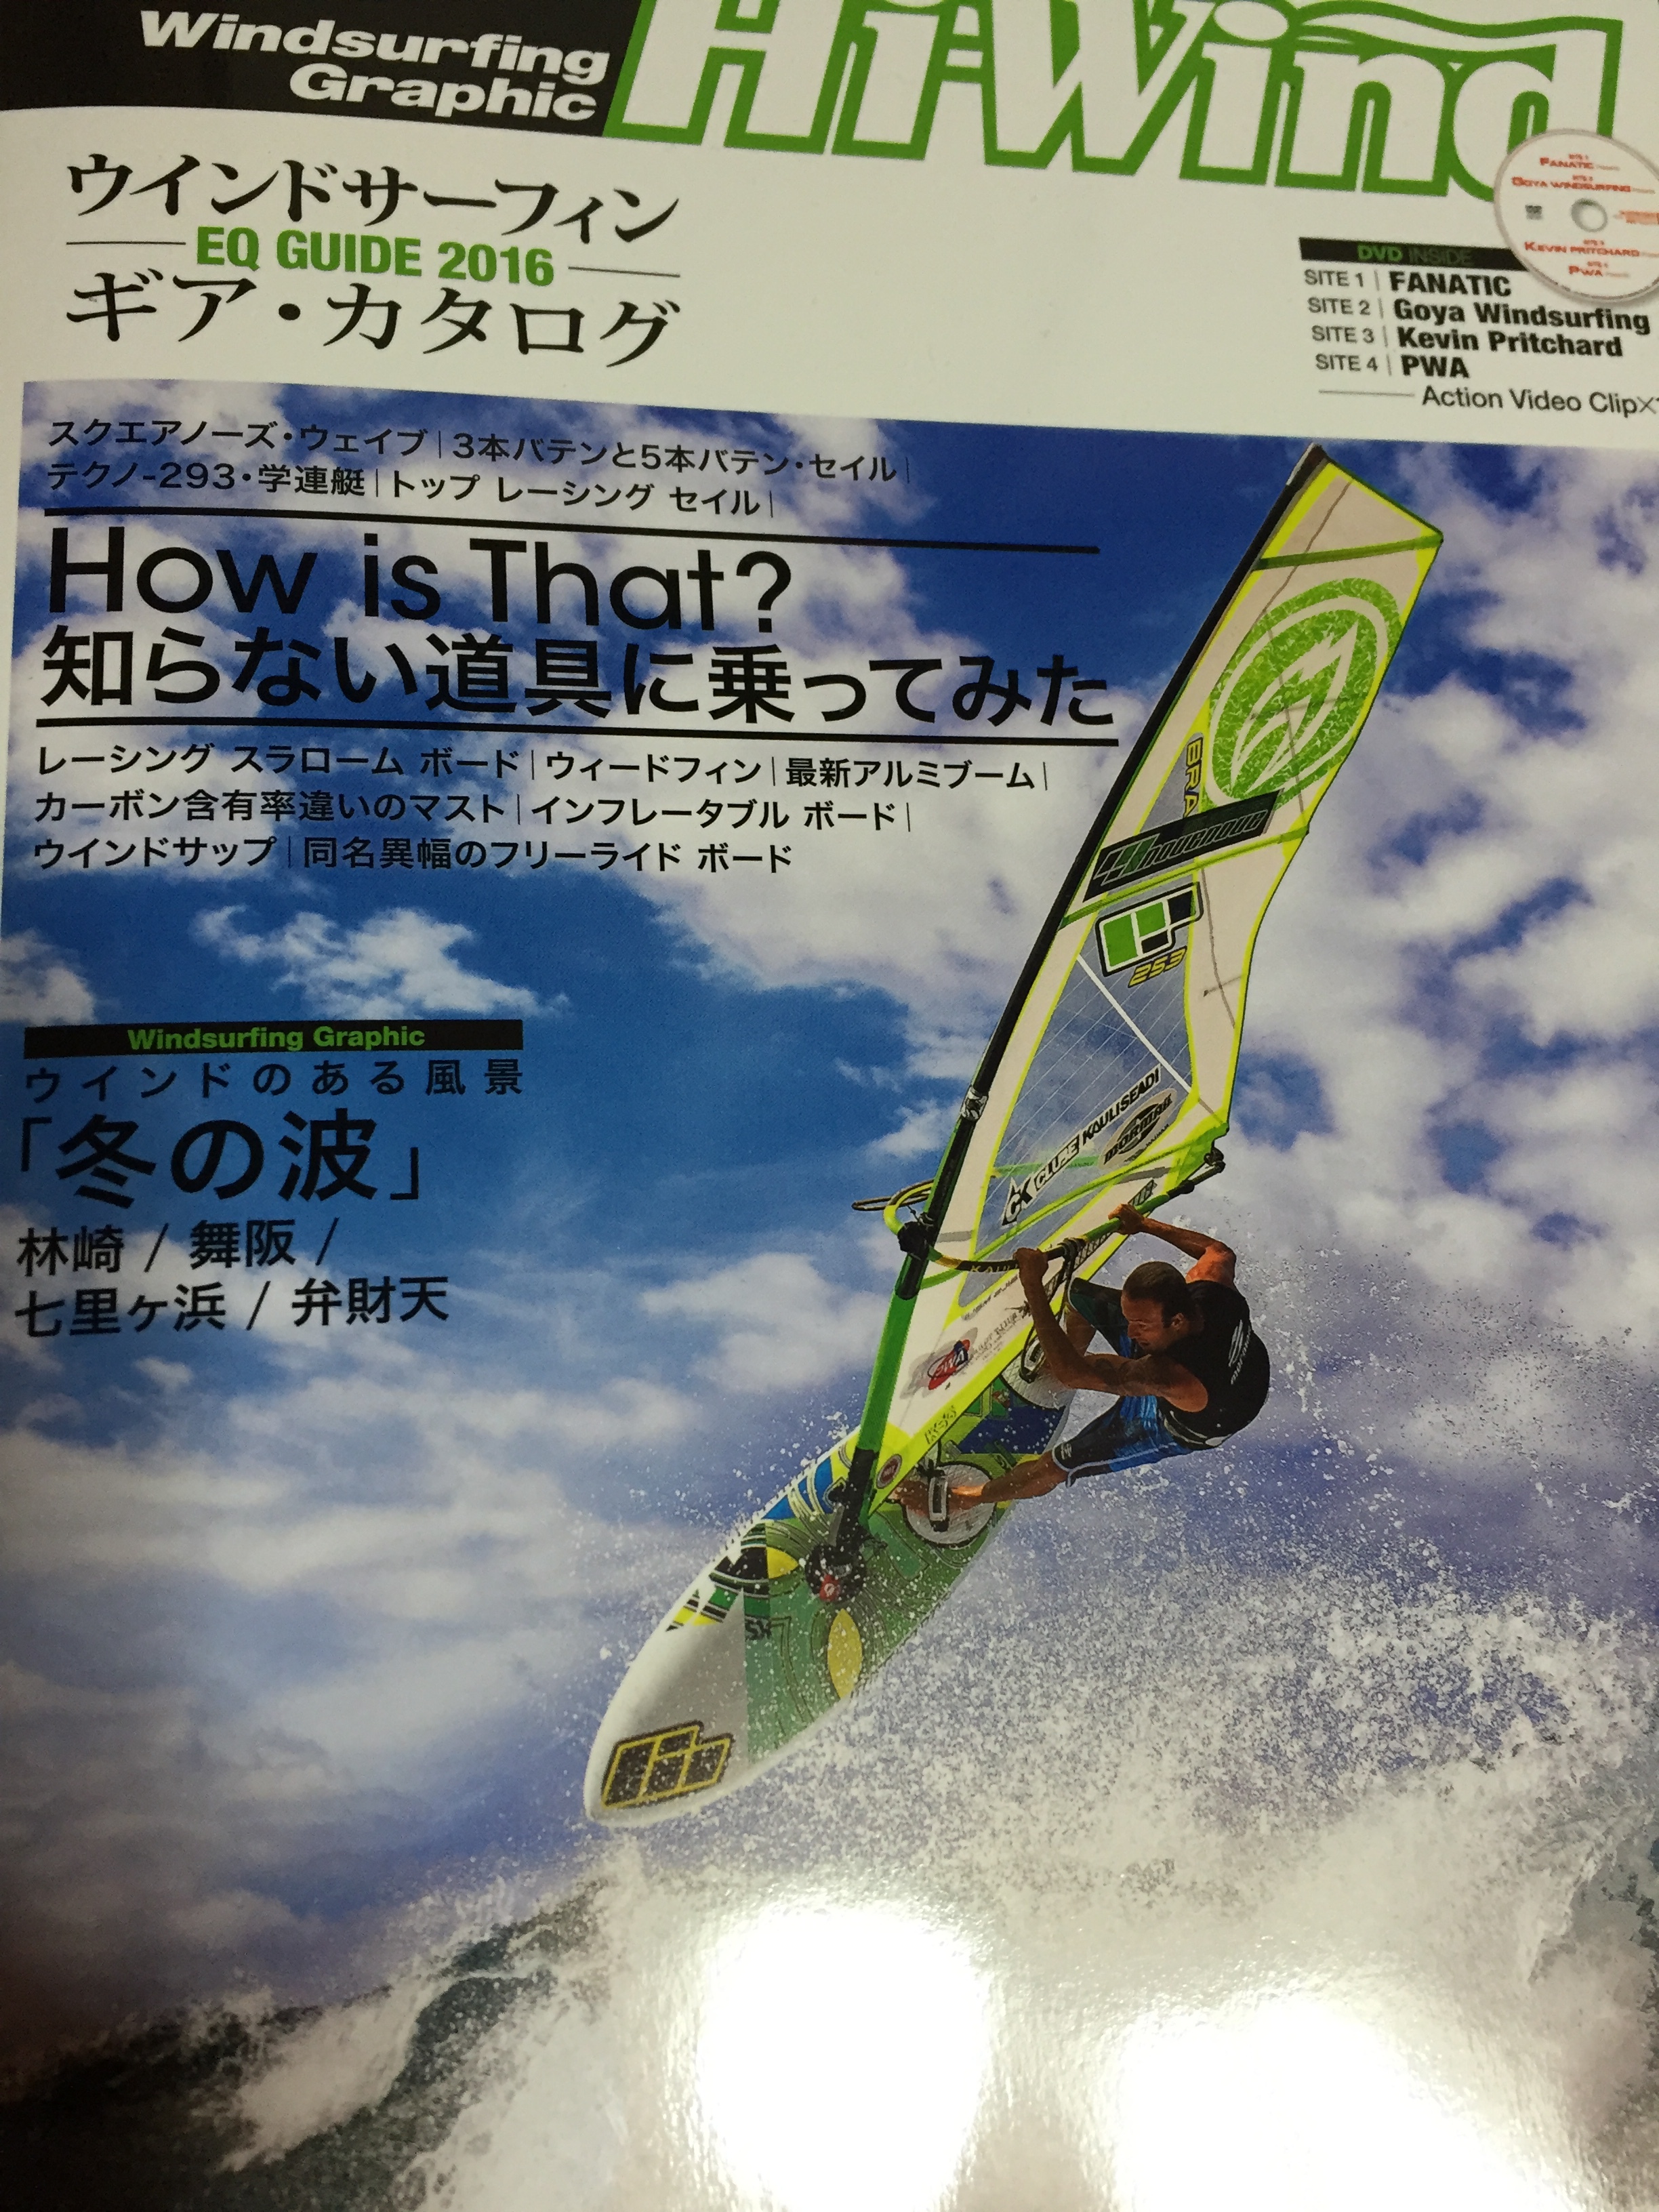 ウインドサーフィン雑誌「Hi-wind」 | Mio Anayama Official home page